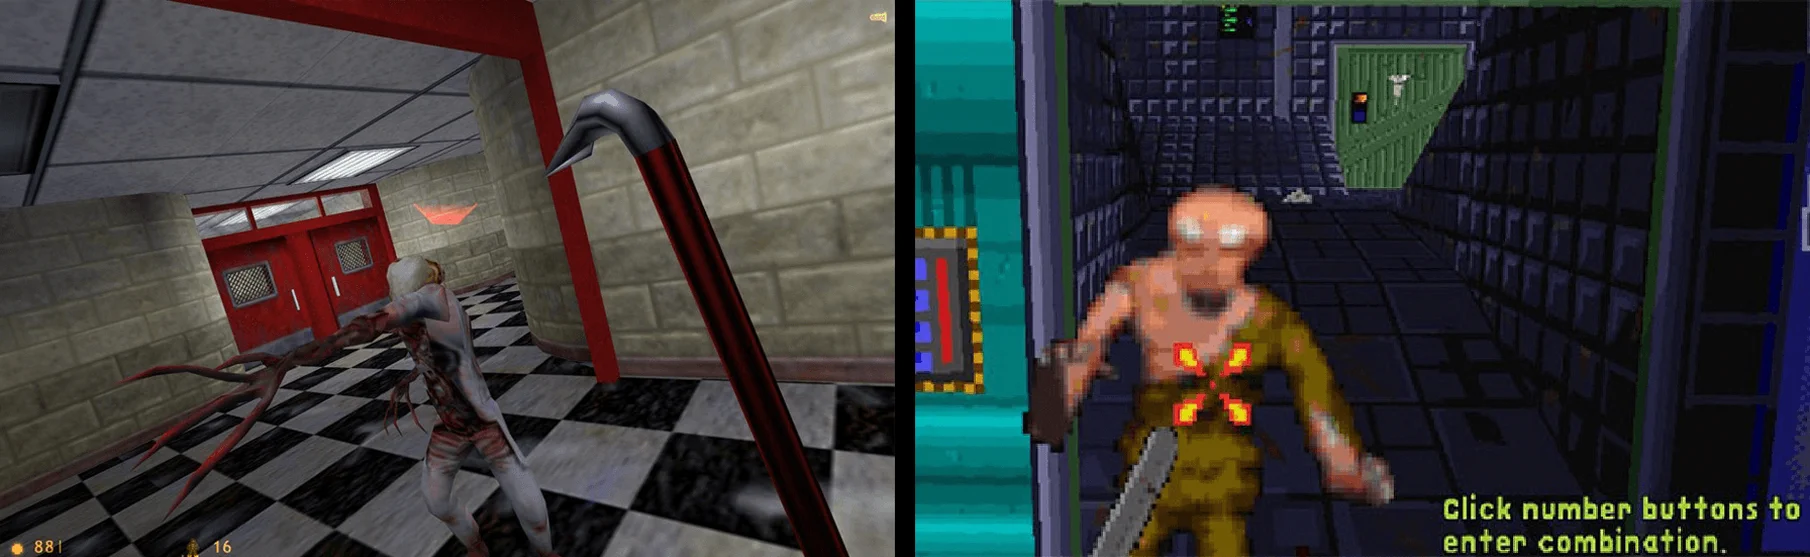 Фомка в Half-Life и свинцовая труба в System Shock.